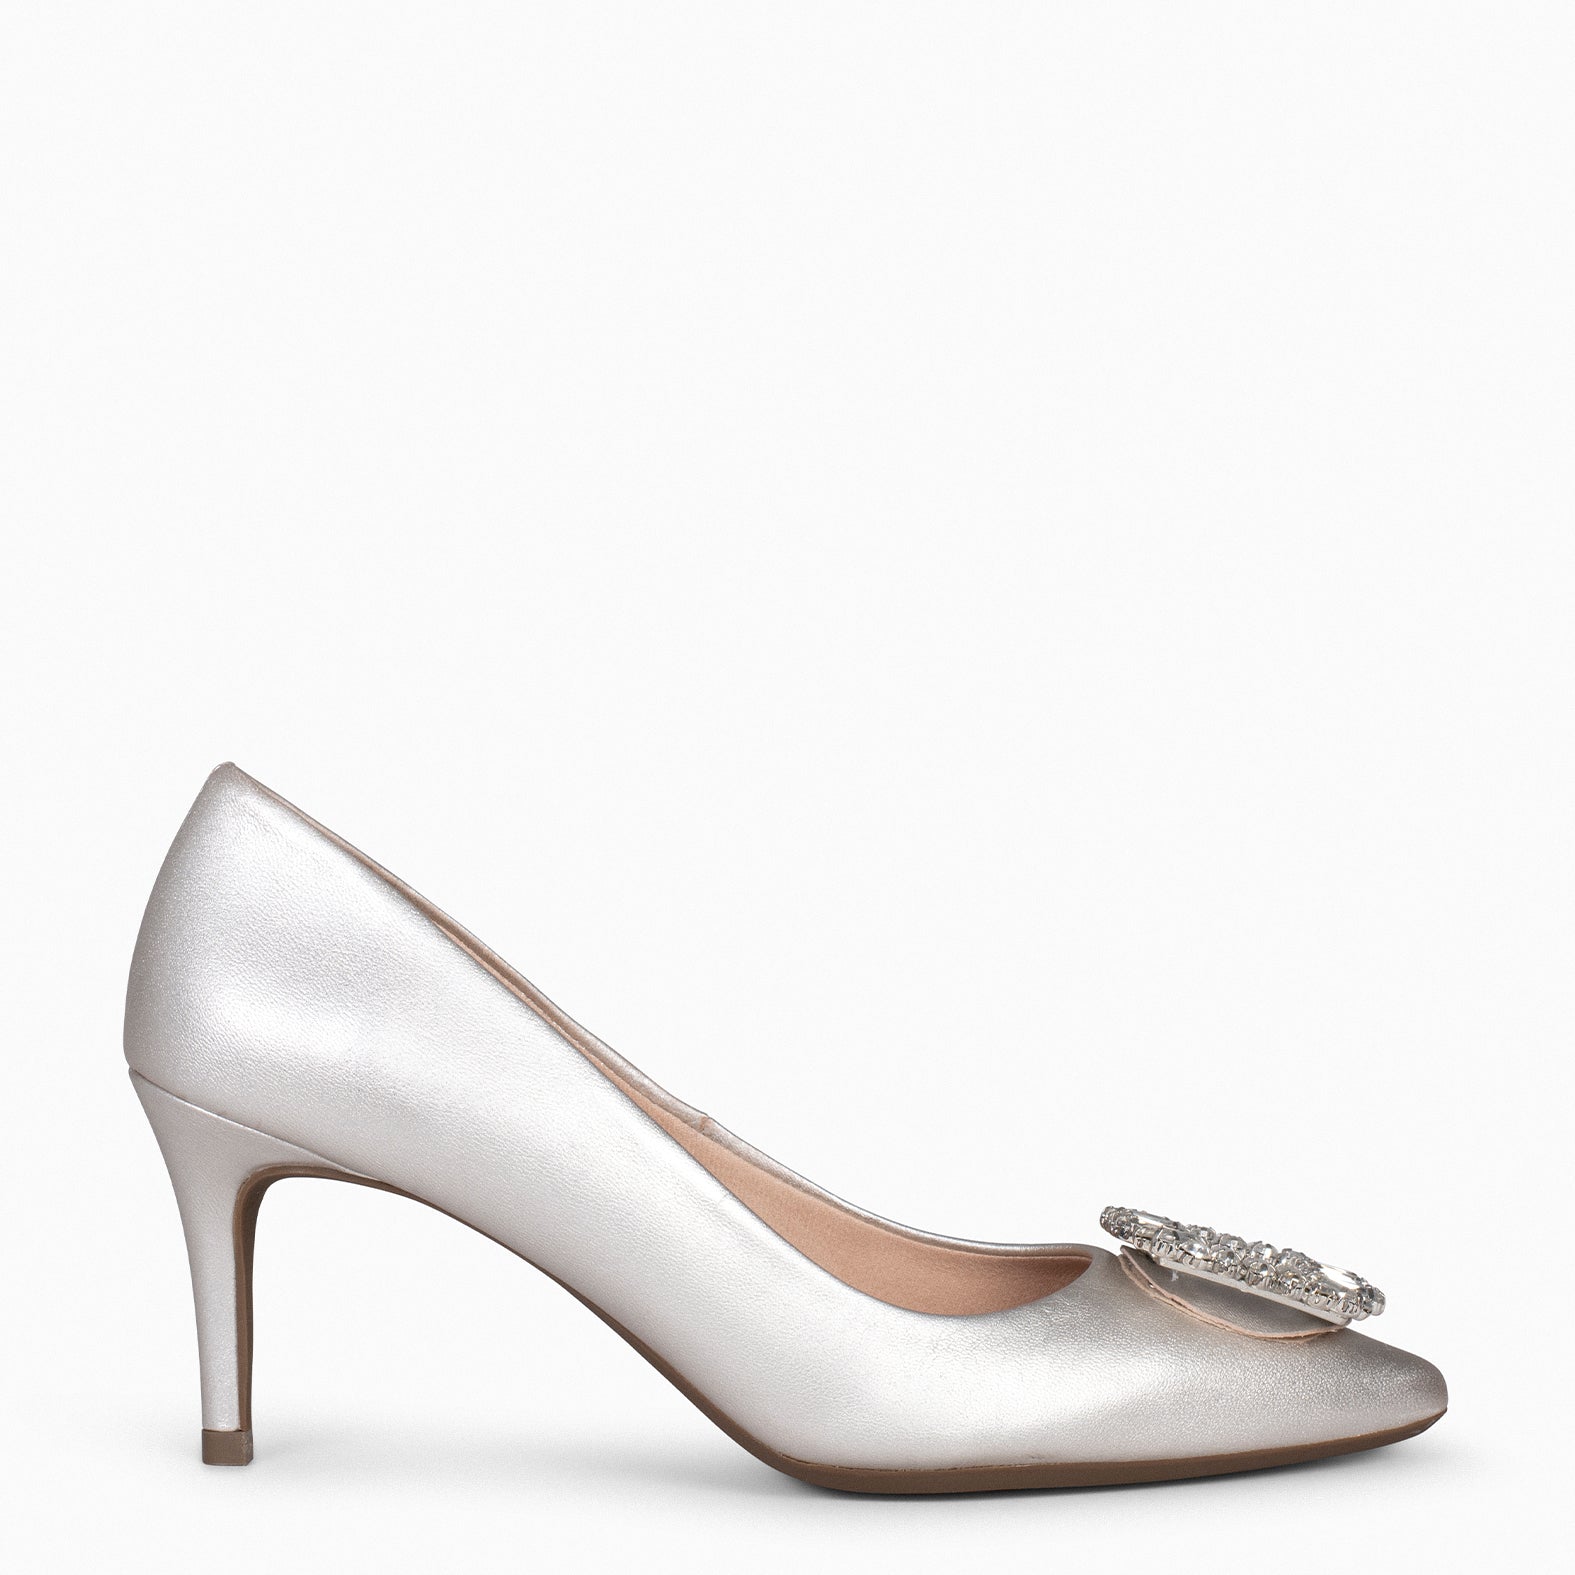 ELLA – SILVER stiletto heels with brooch